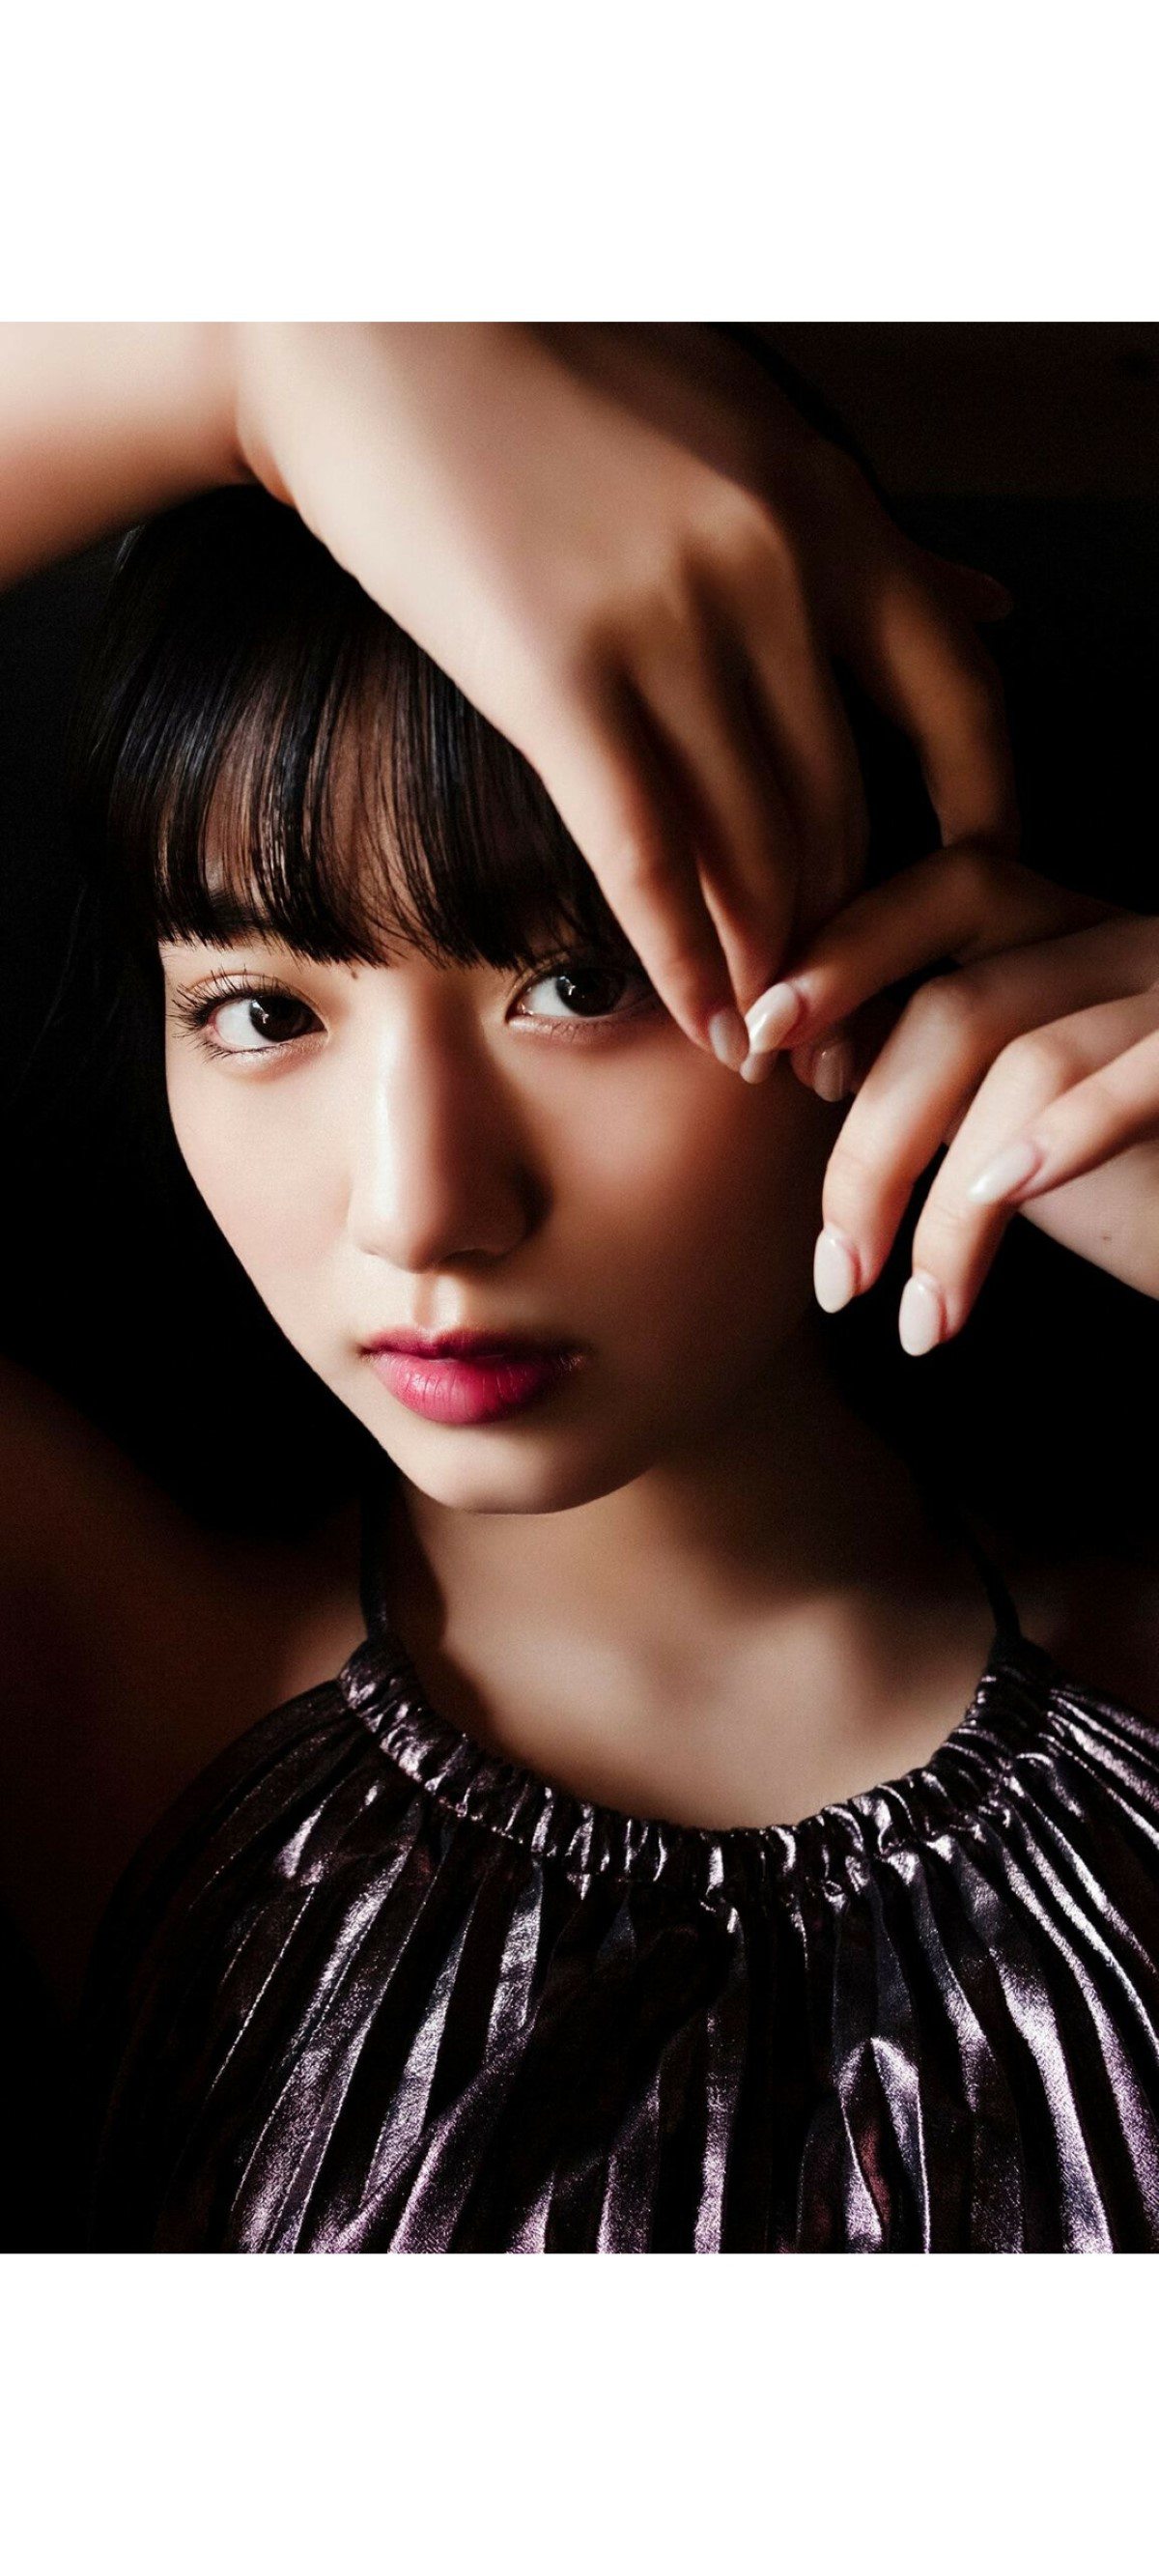 Weekly Photobook 2020 12 07 Noa Tsurushima 鶴嶋乃愛 A natural actress 生まれながらにして女優 0046 2986862504.jpg